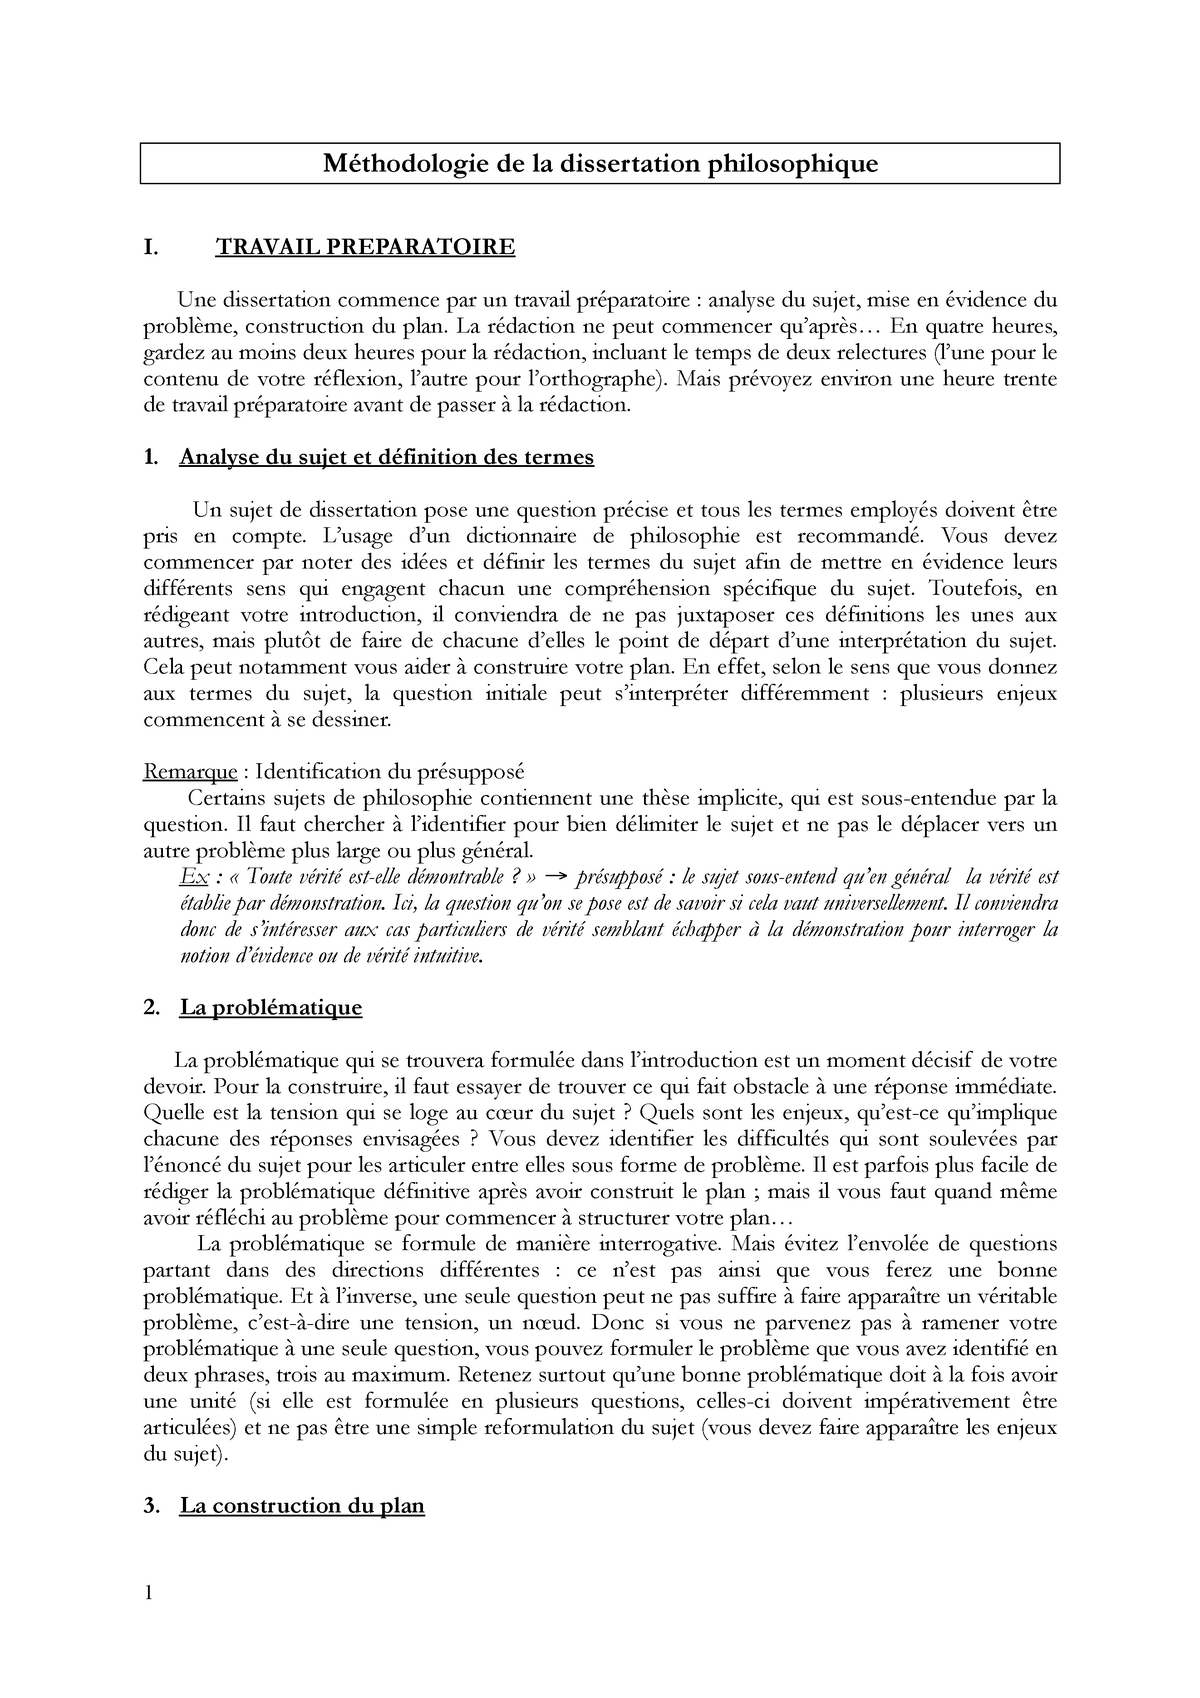 la methodologie de la dissertation en philosophie pdf